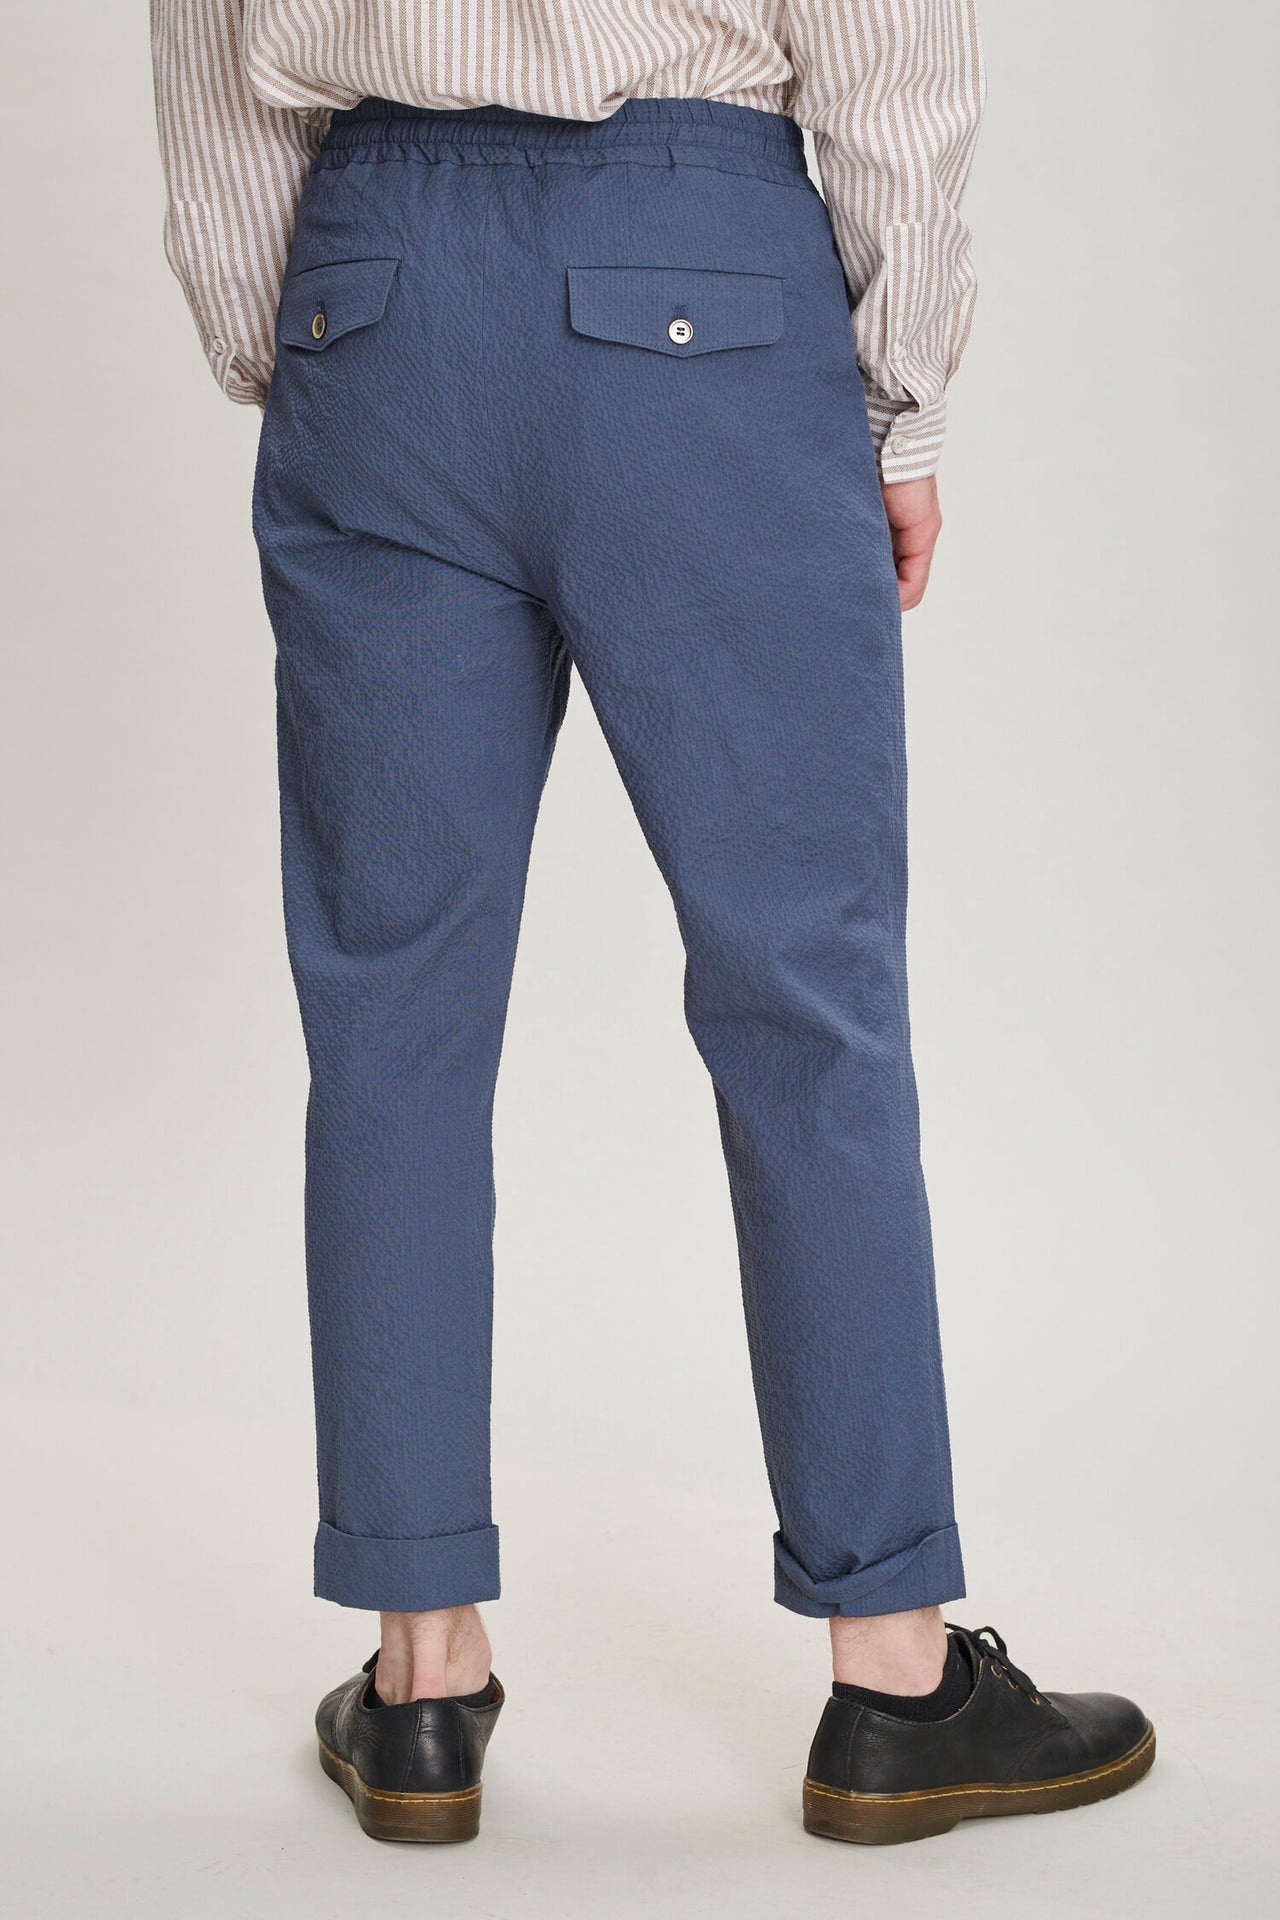 Garden Trousers in a Blue Italian Cotton Seersucker